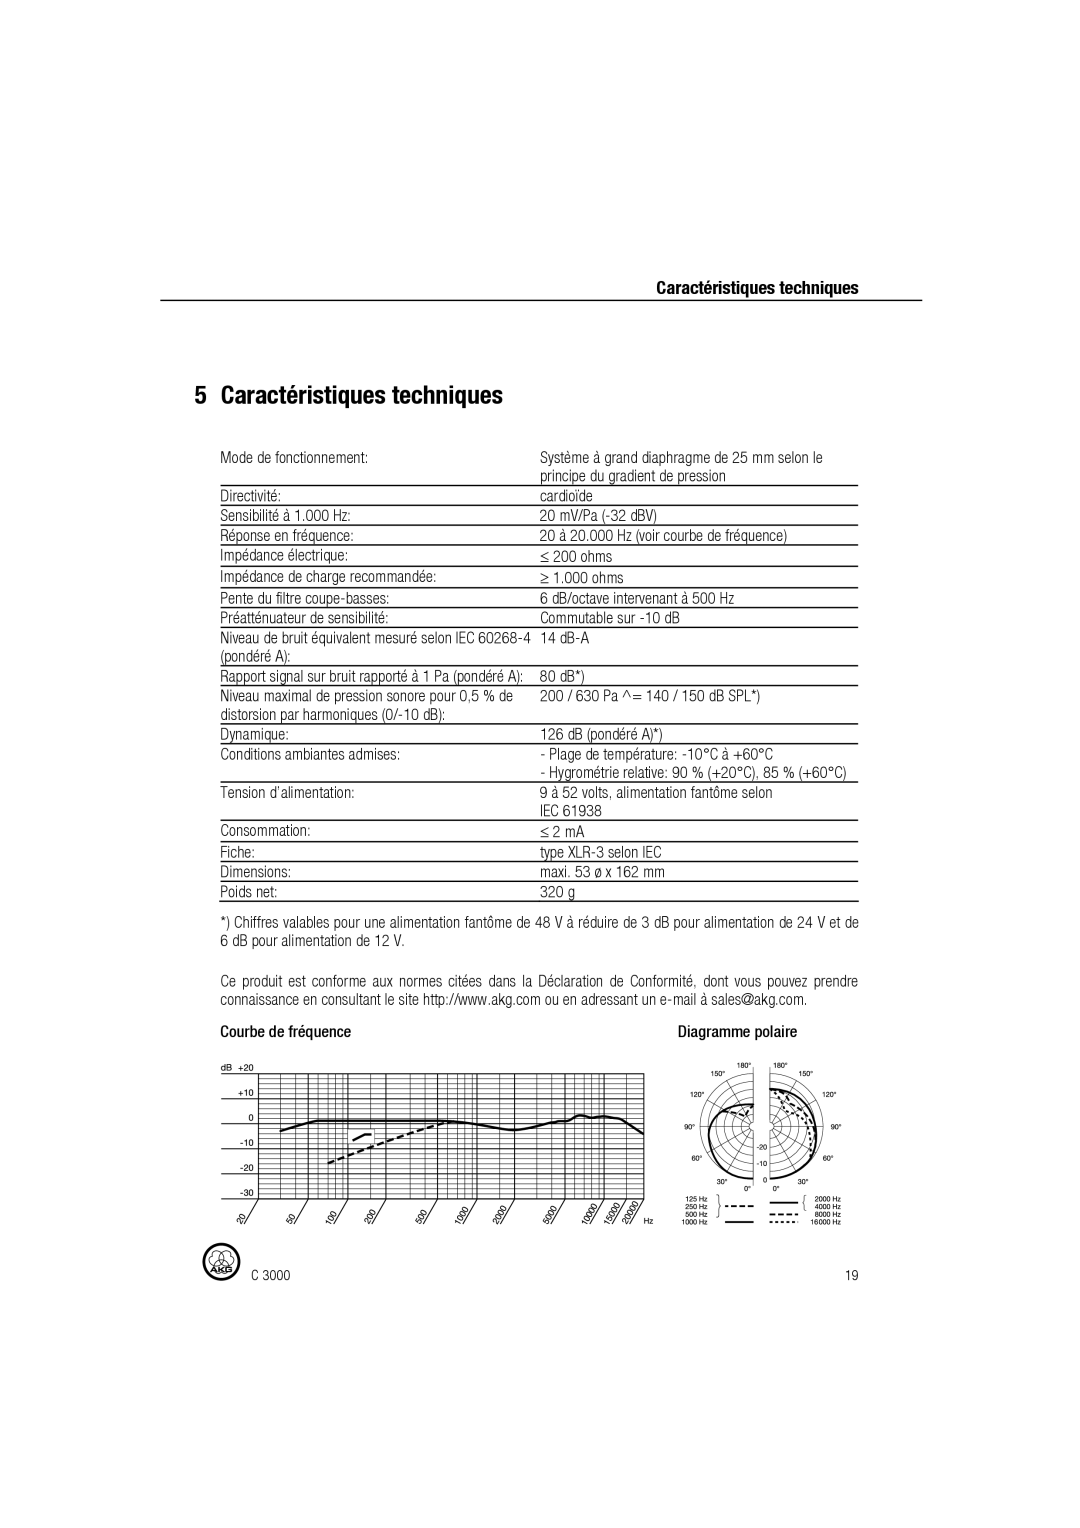 AKG Acoustics C 3000 manual Caractéristiques techniques, Mode de fonctionnement, Principe du gradient de pression 